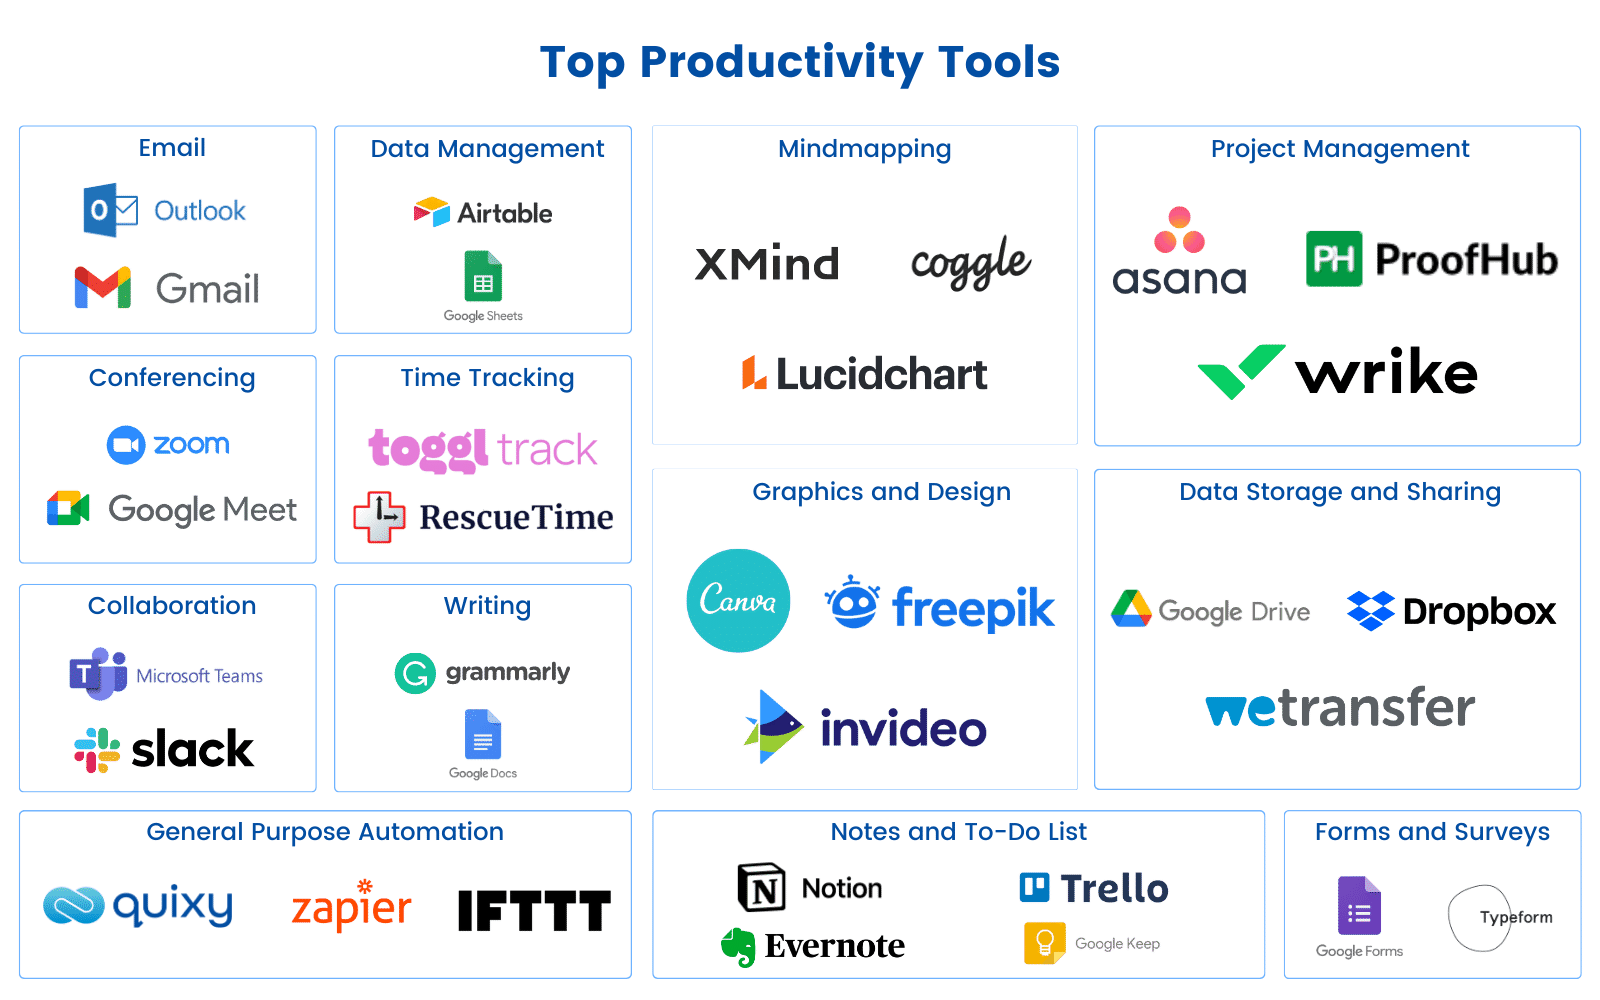 https://quixy.com/wp-content/uploads/2021/08/Top-Productivity-Tools.png